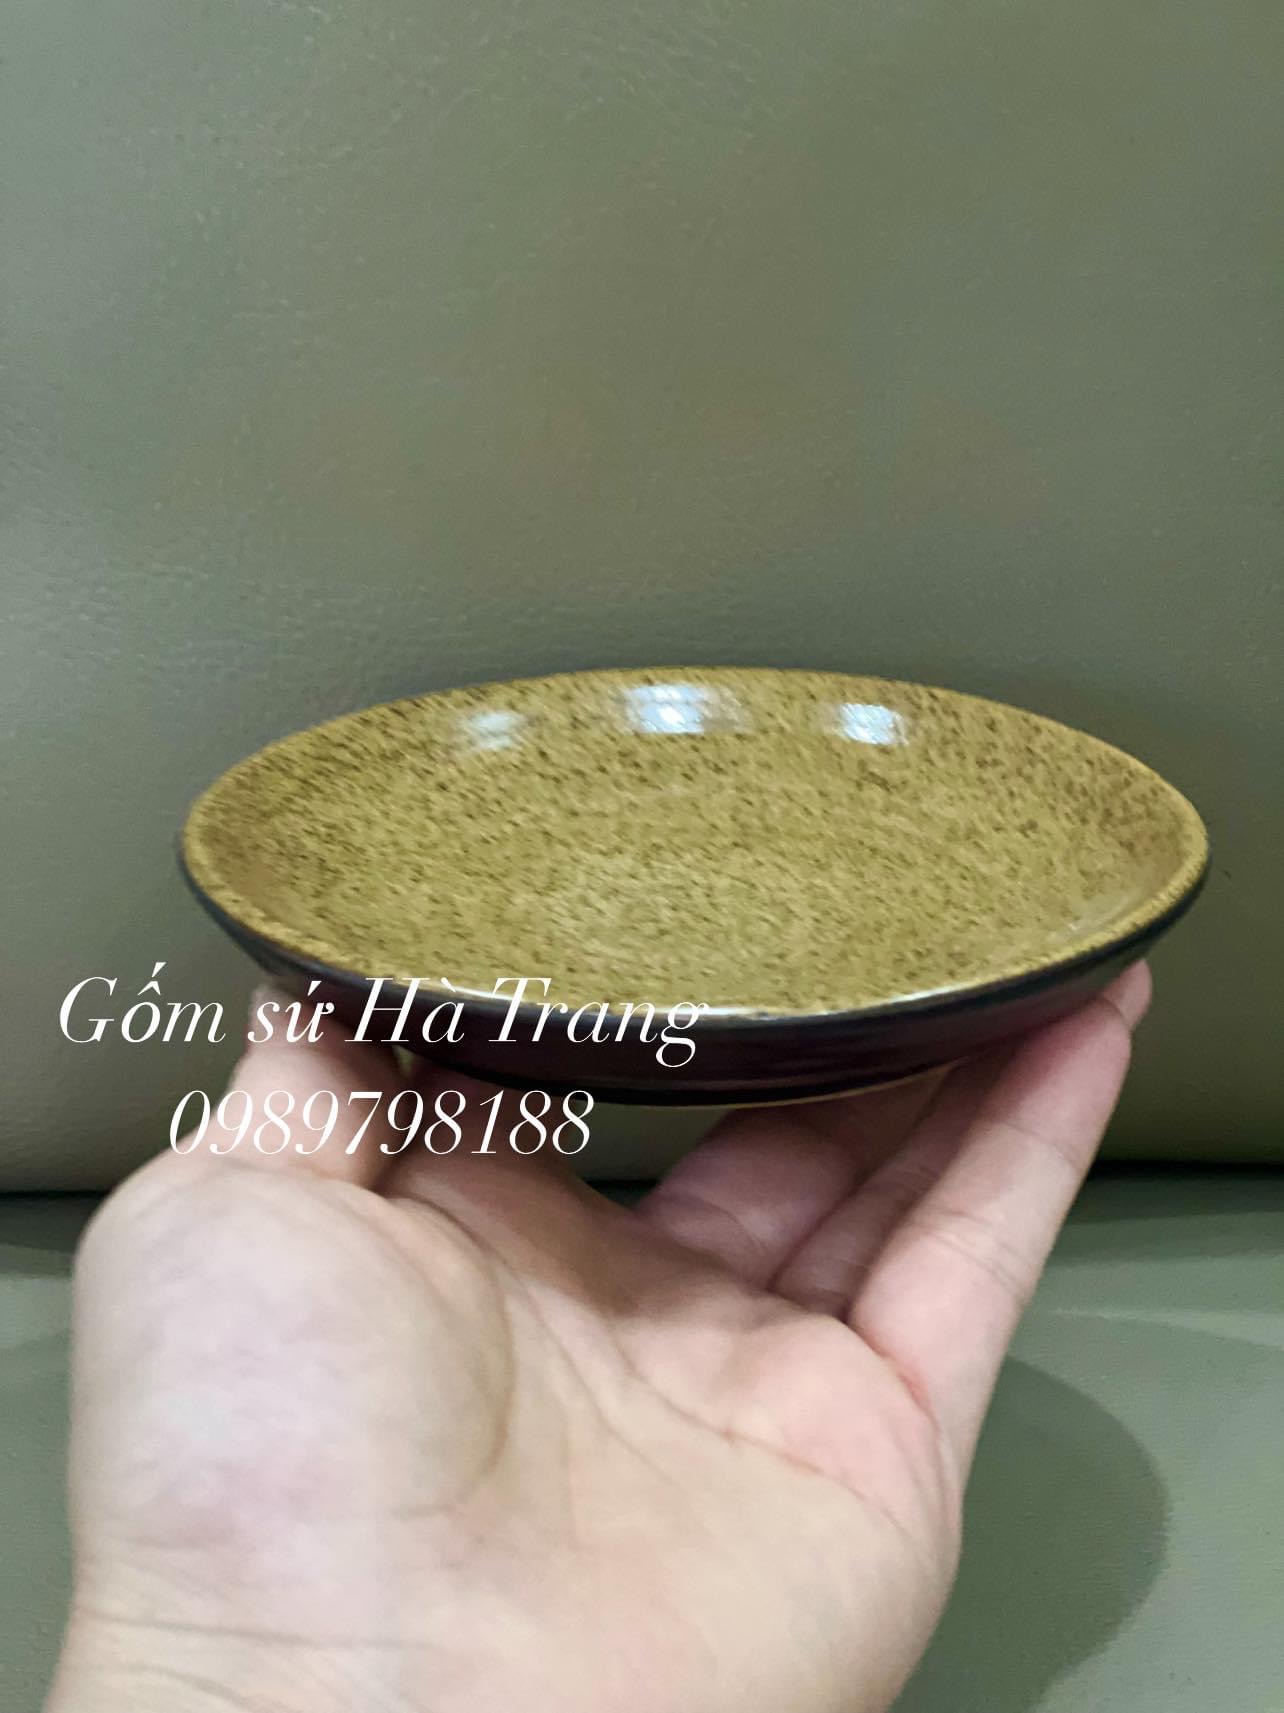 Bộ cốc đĩa thìa nắp gốm sứ Bát Tràng cao cấp dung tích 250ml